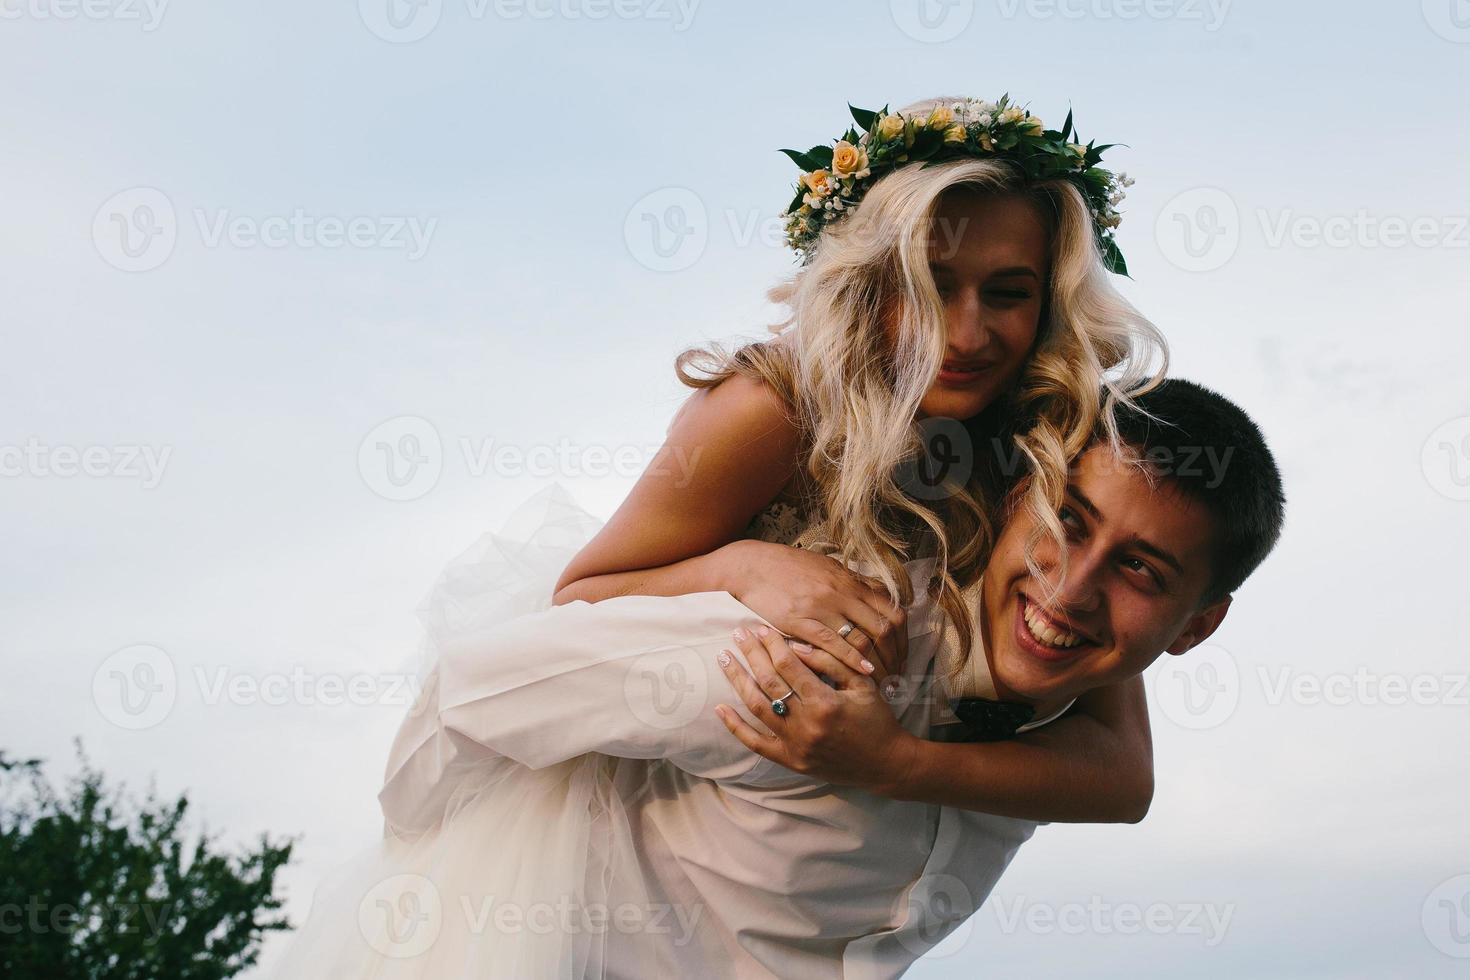 bräutigam trägt braut auf dem rücken im freien foto